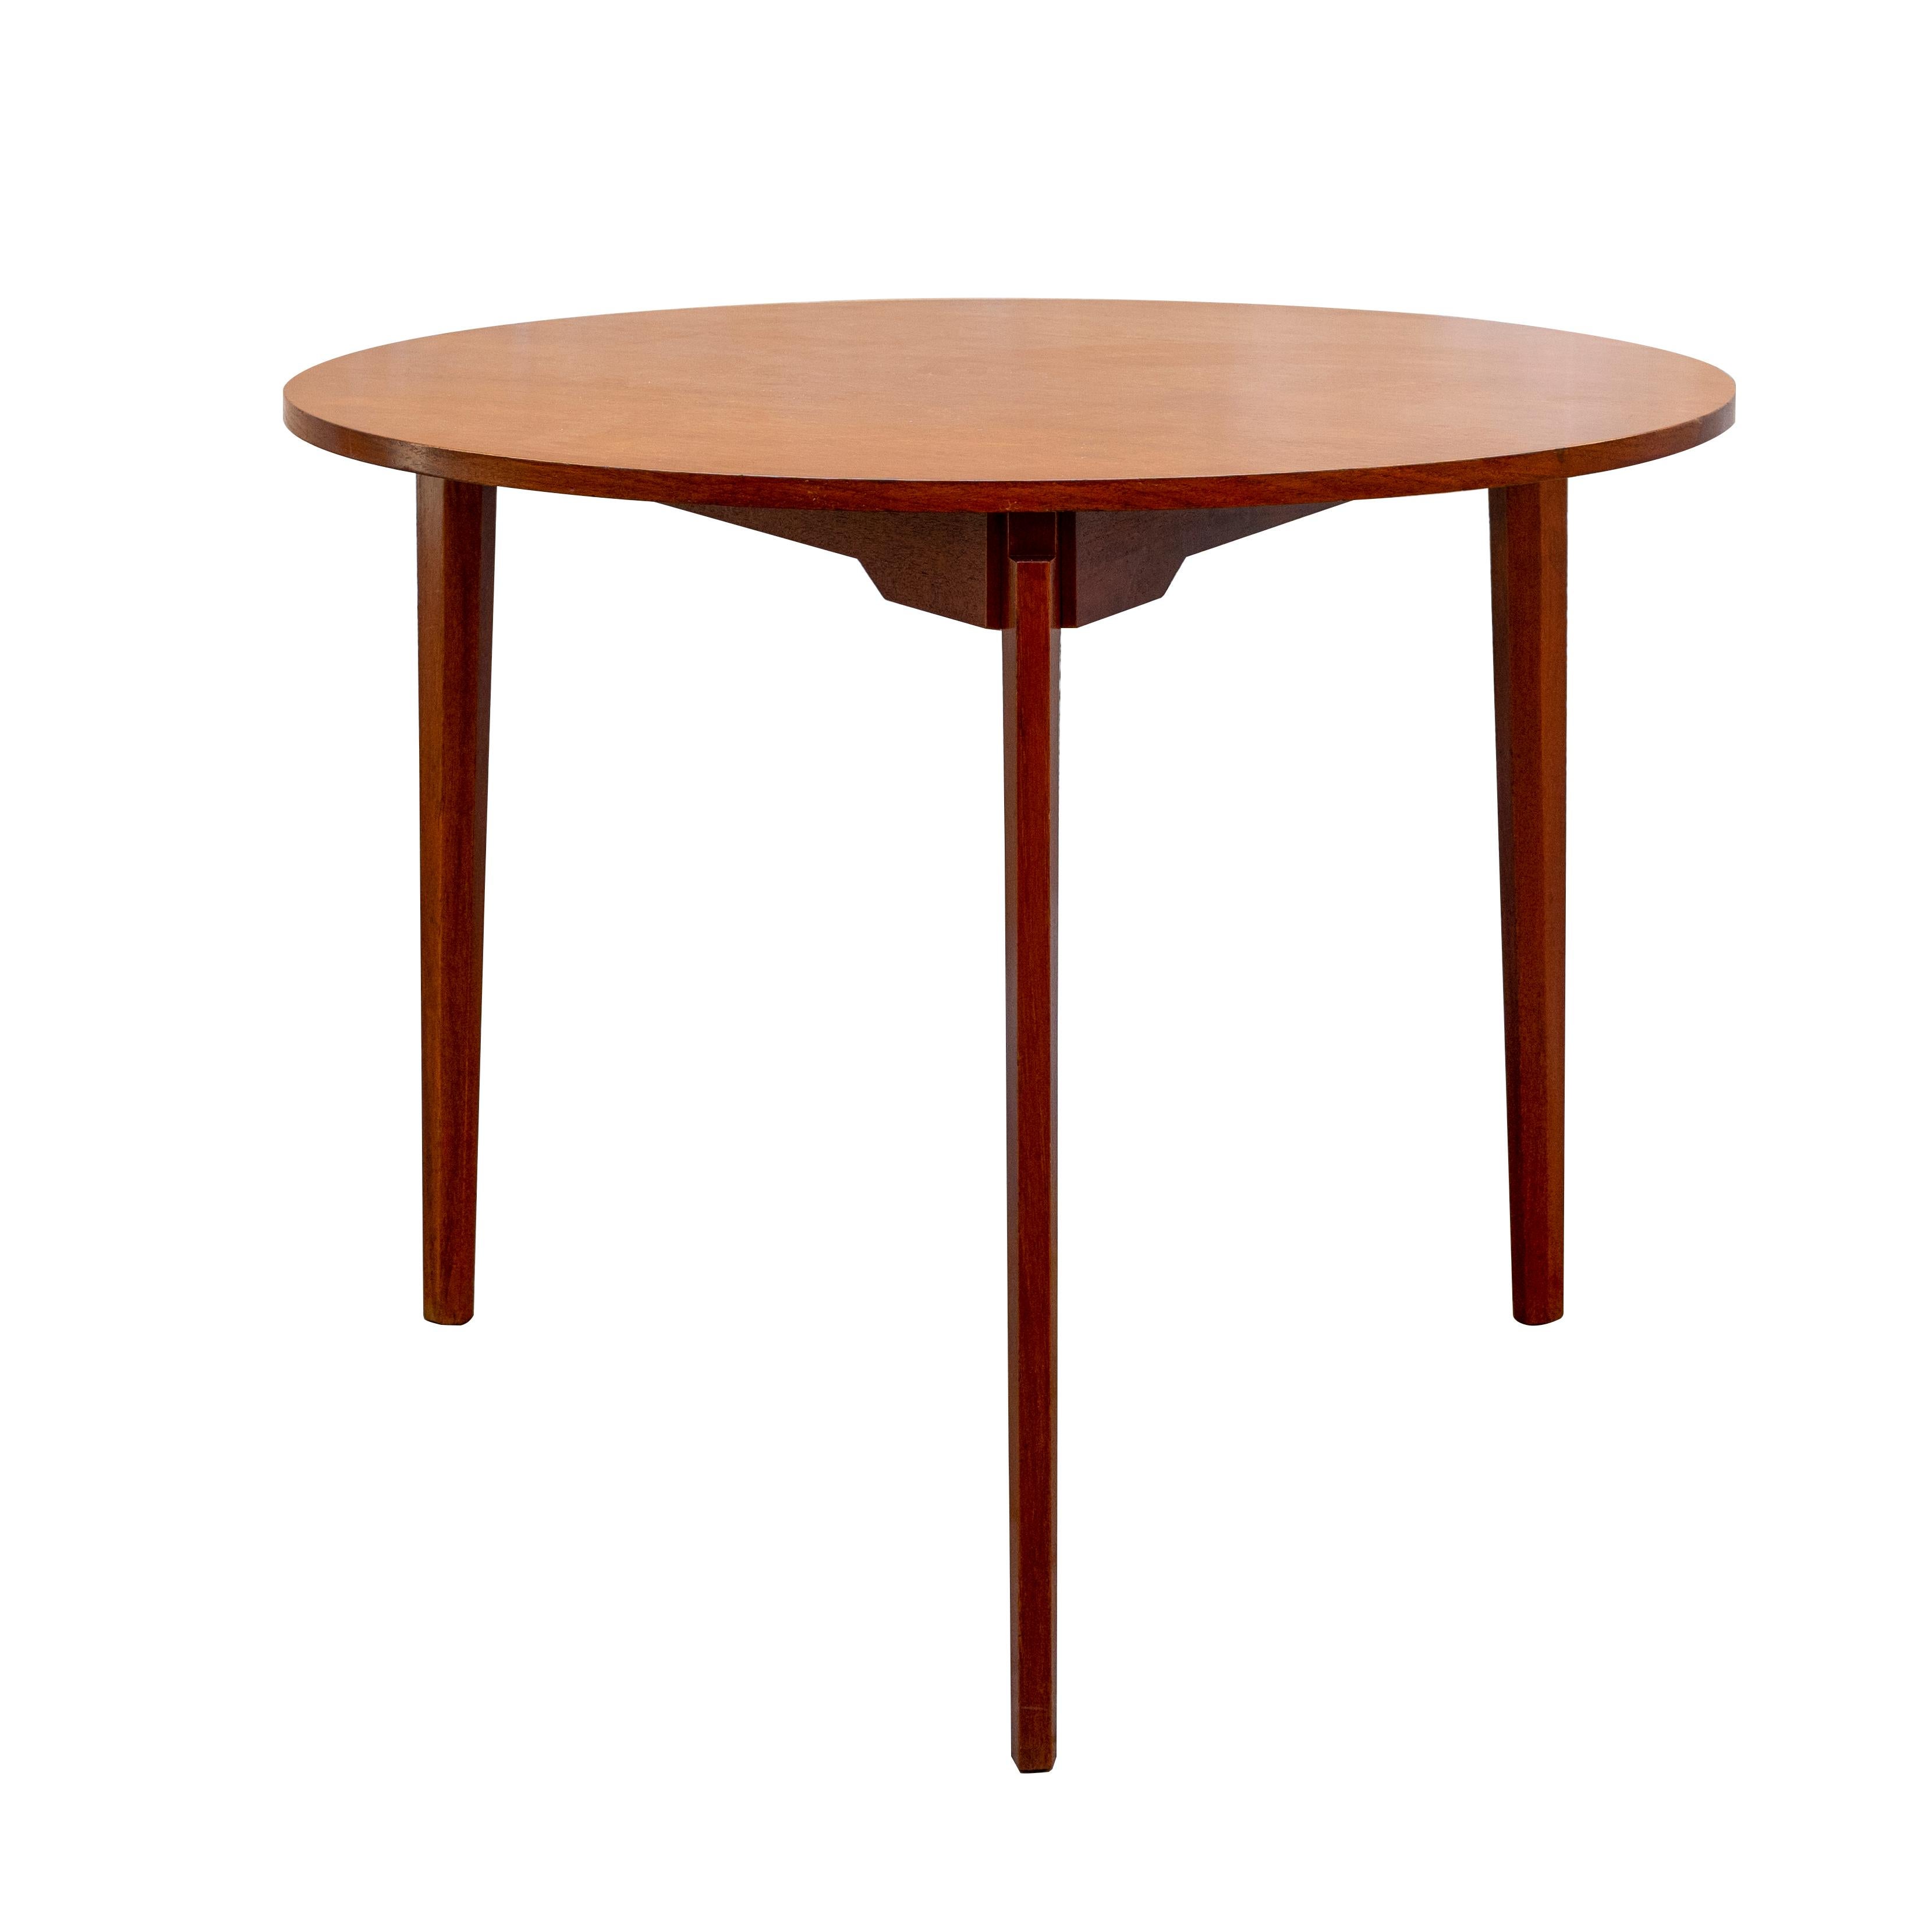 Gio Ponti Stil runder Tisch mit drei Beinen Italien Mid-Century Modern.
Der runde Tisch im Stil von Gio Ponti, das Design mit nur drei Beinen ist großartig das Motiv, das in den Raum zwischen der Spitze und die Stiele, die eingefügt und demontiert